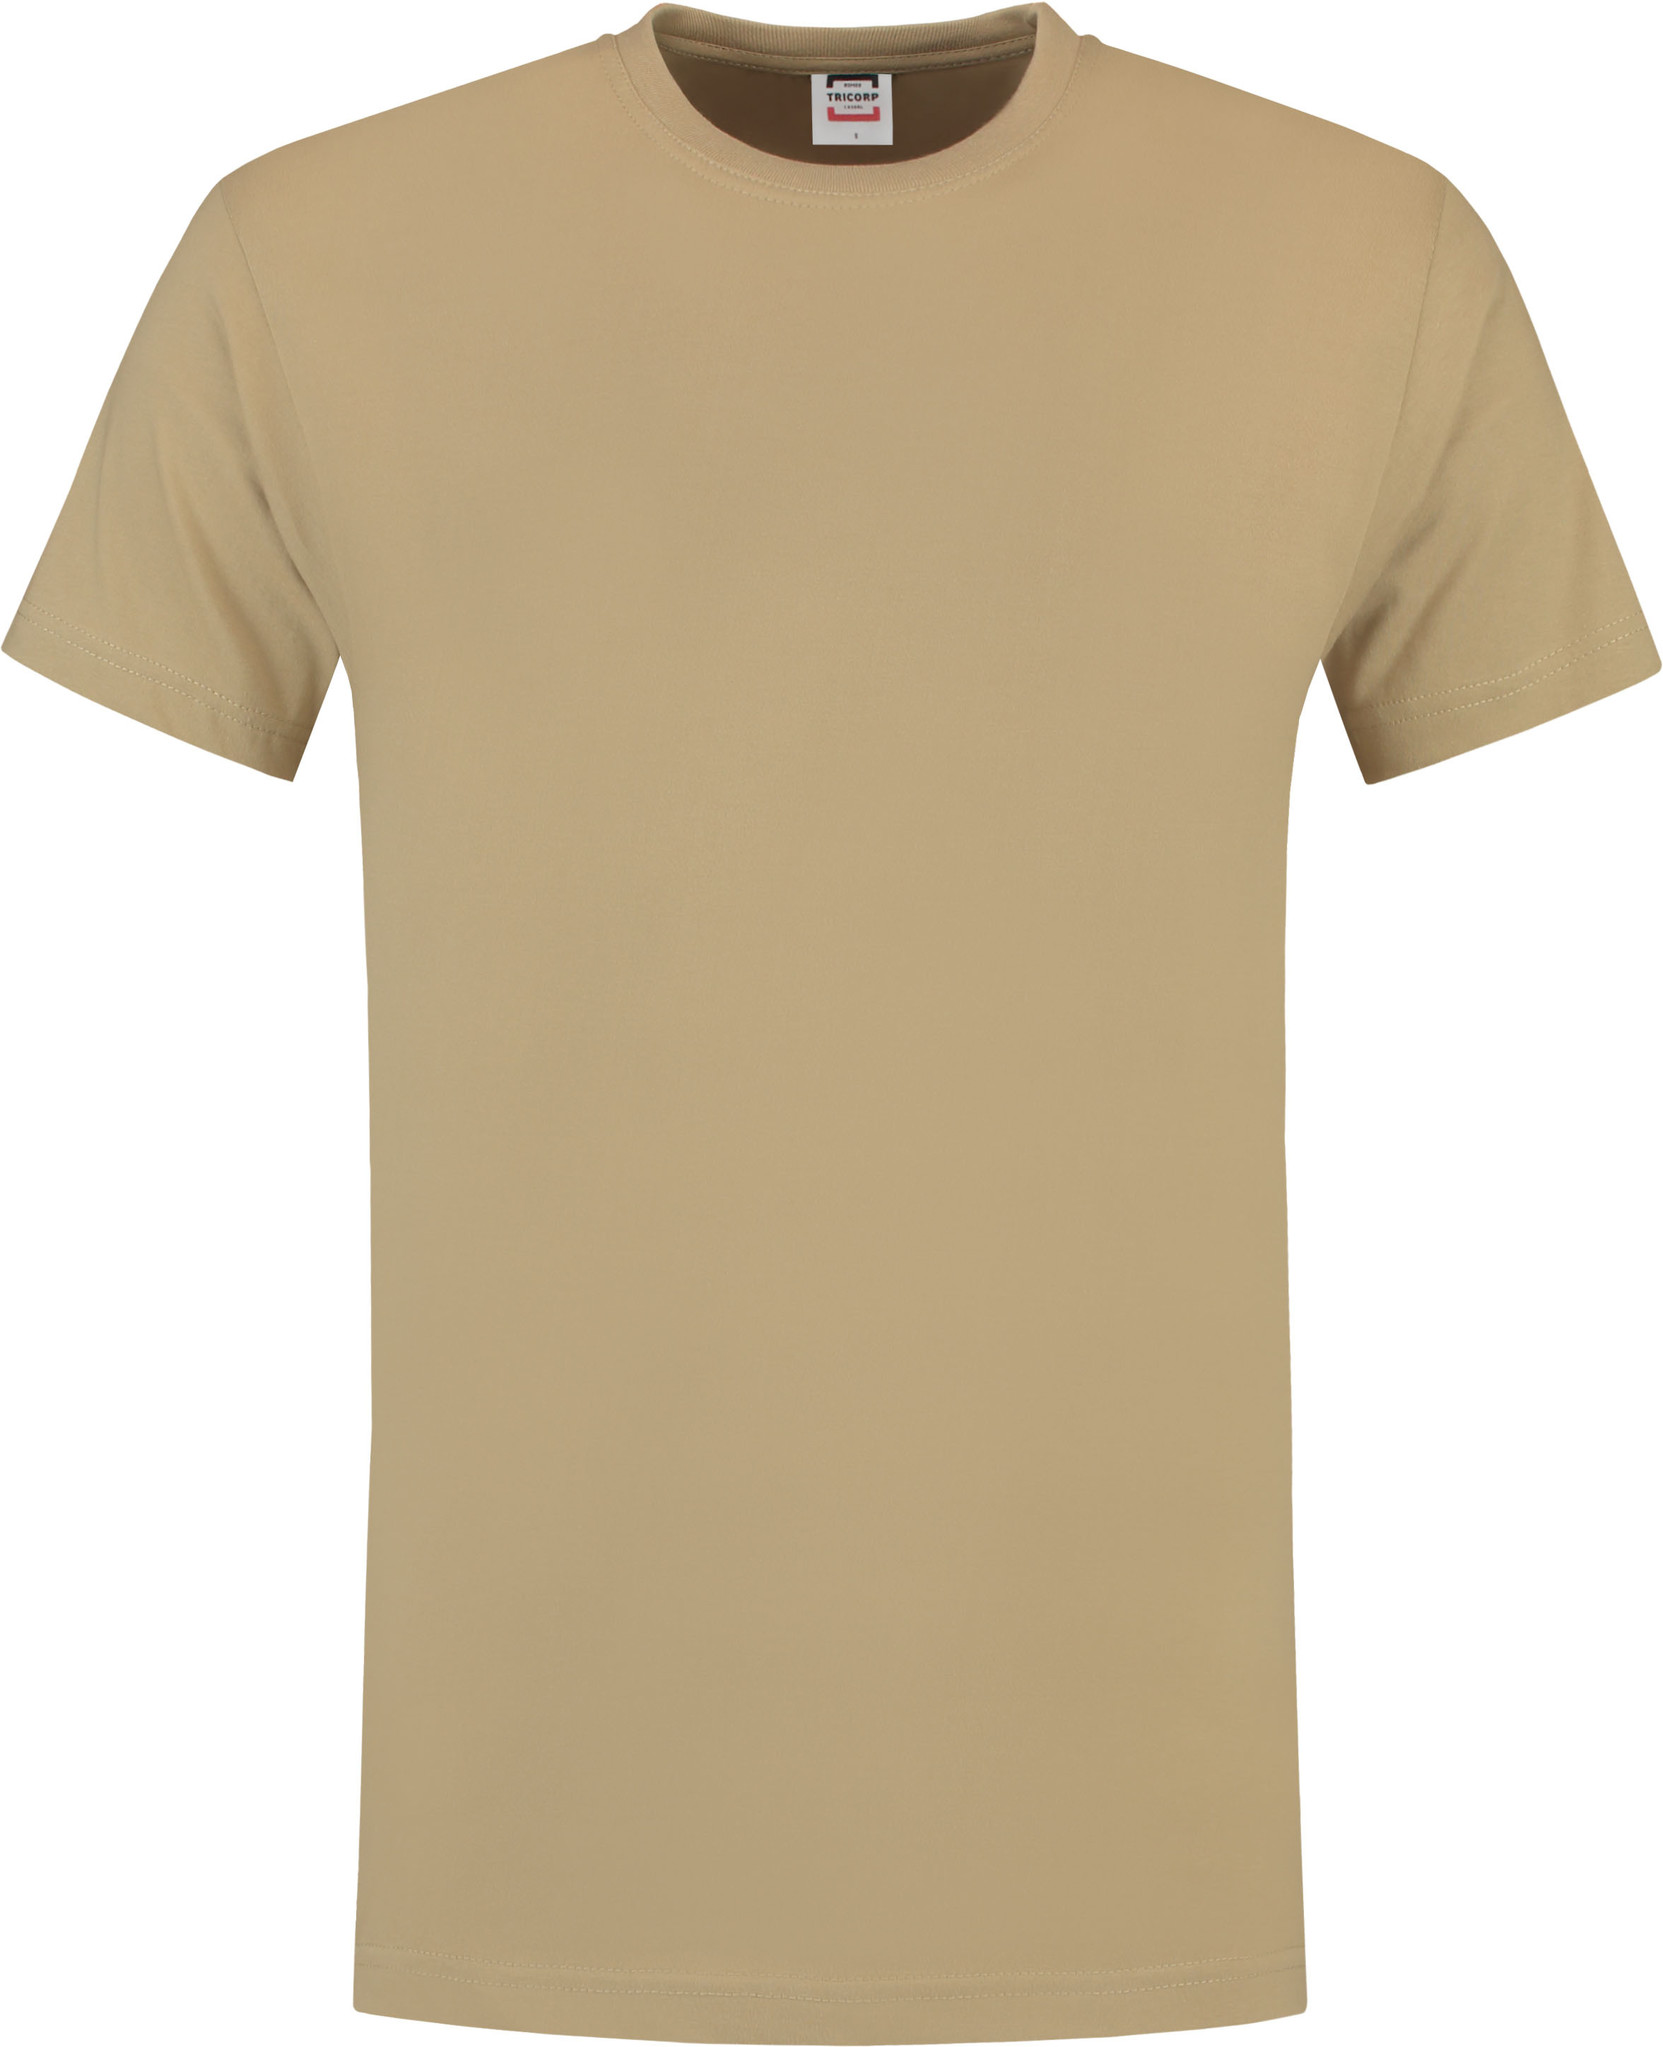 Briljant astronaut Gezamenlijk T-shirt T190 in zware kwaliteit in diverse kleuren